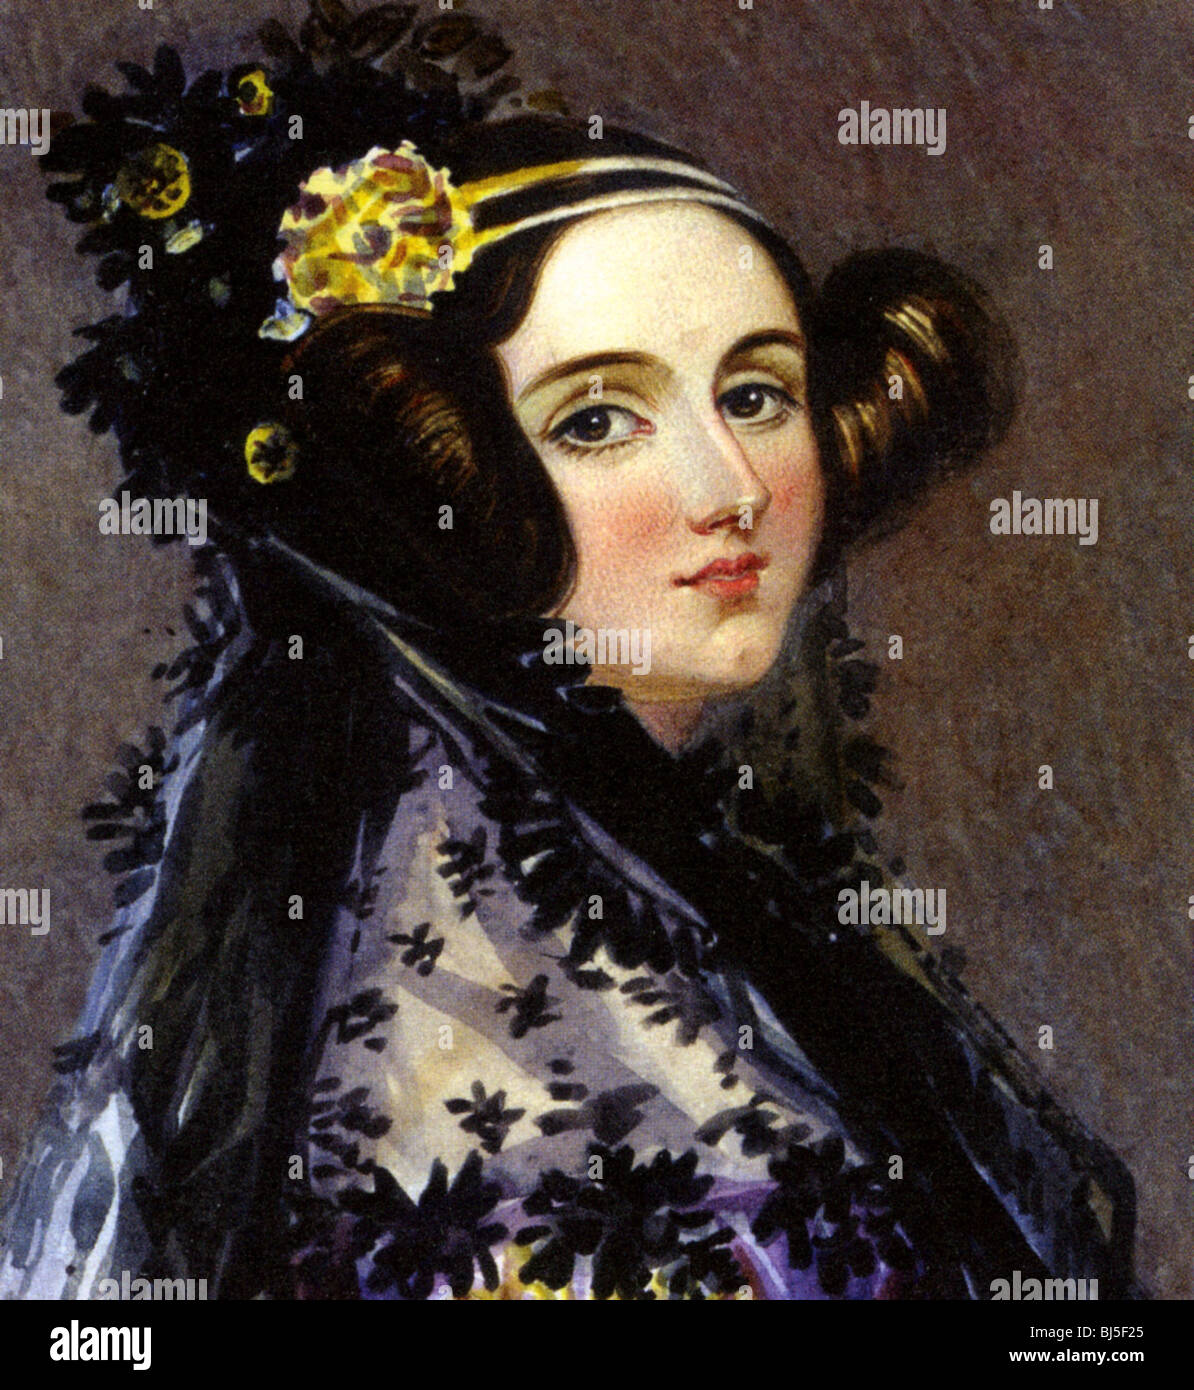 ADA-LOVELACE - englischer Schriftsteller und Mathematiker (1815-1852)  Tochter von Lord Byron und Freund von Charles Babbage Stockfotografie -  Alamy